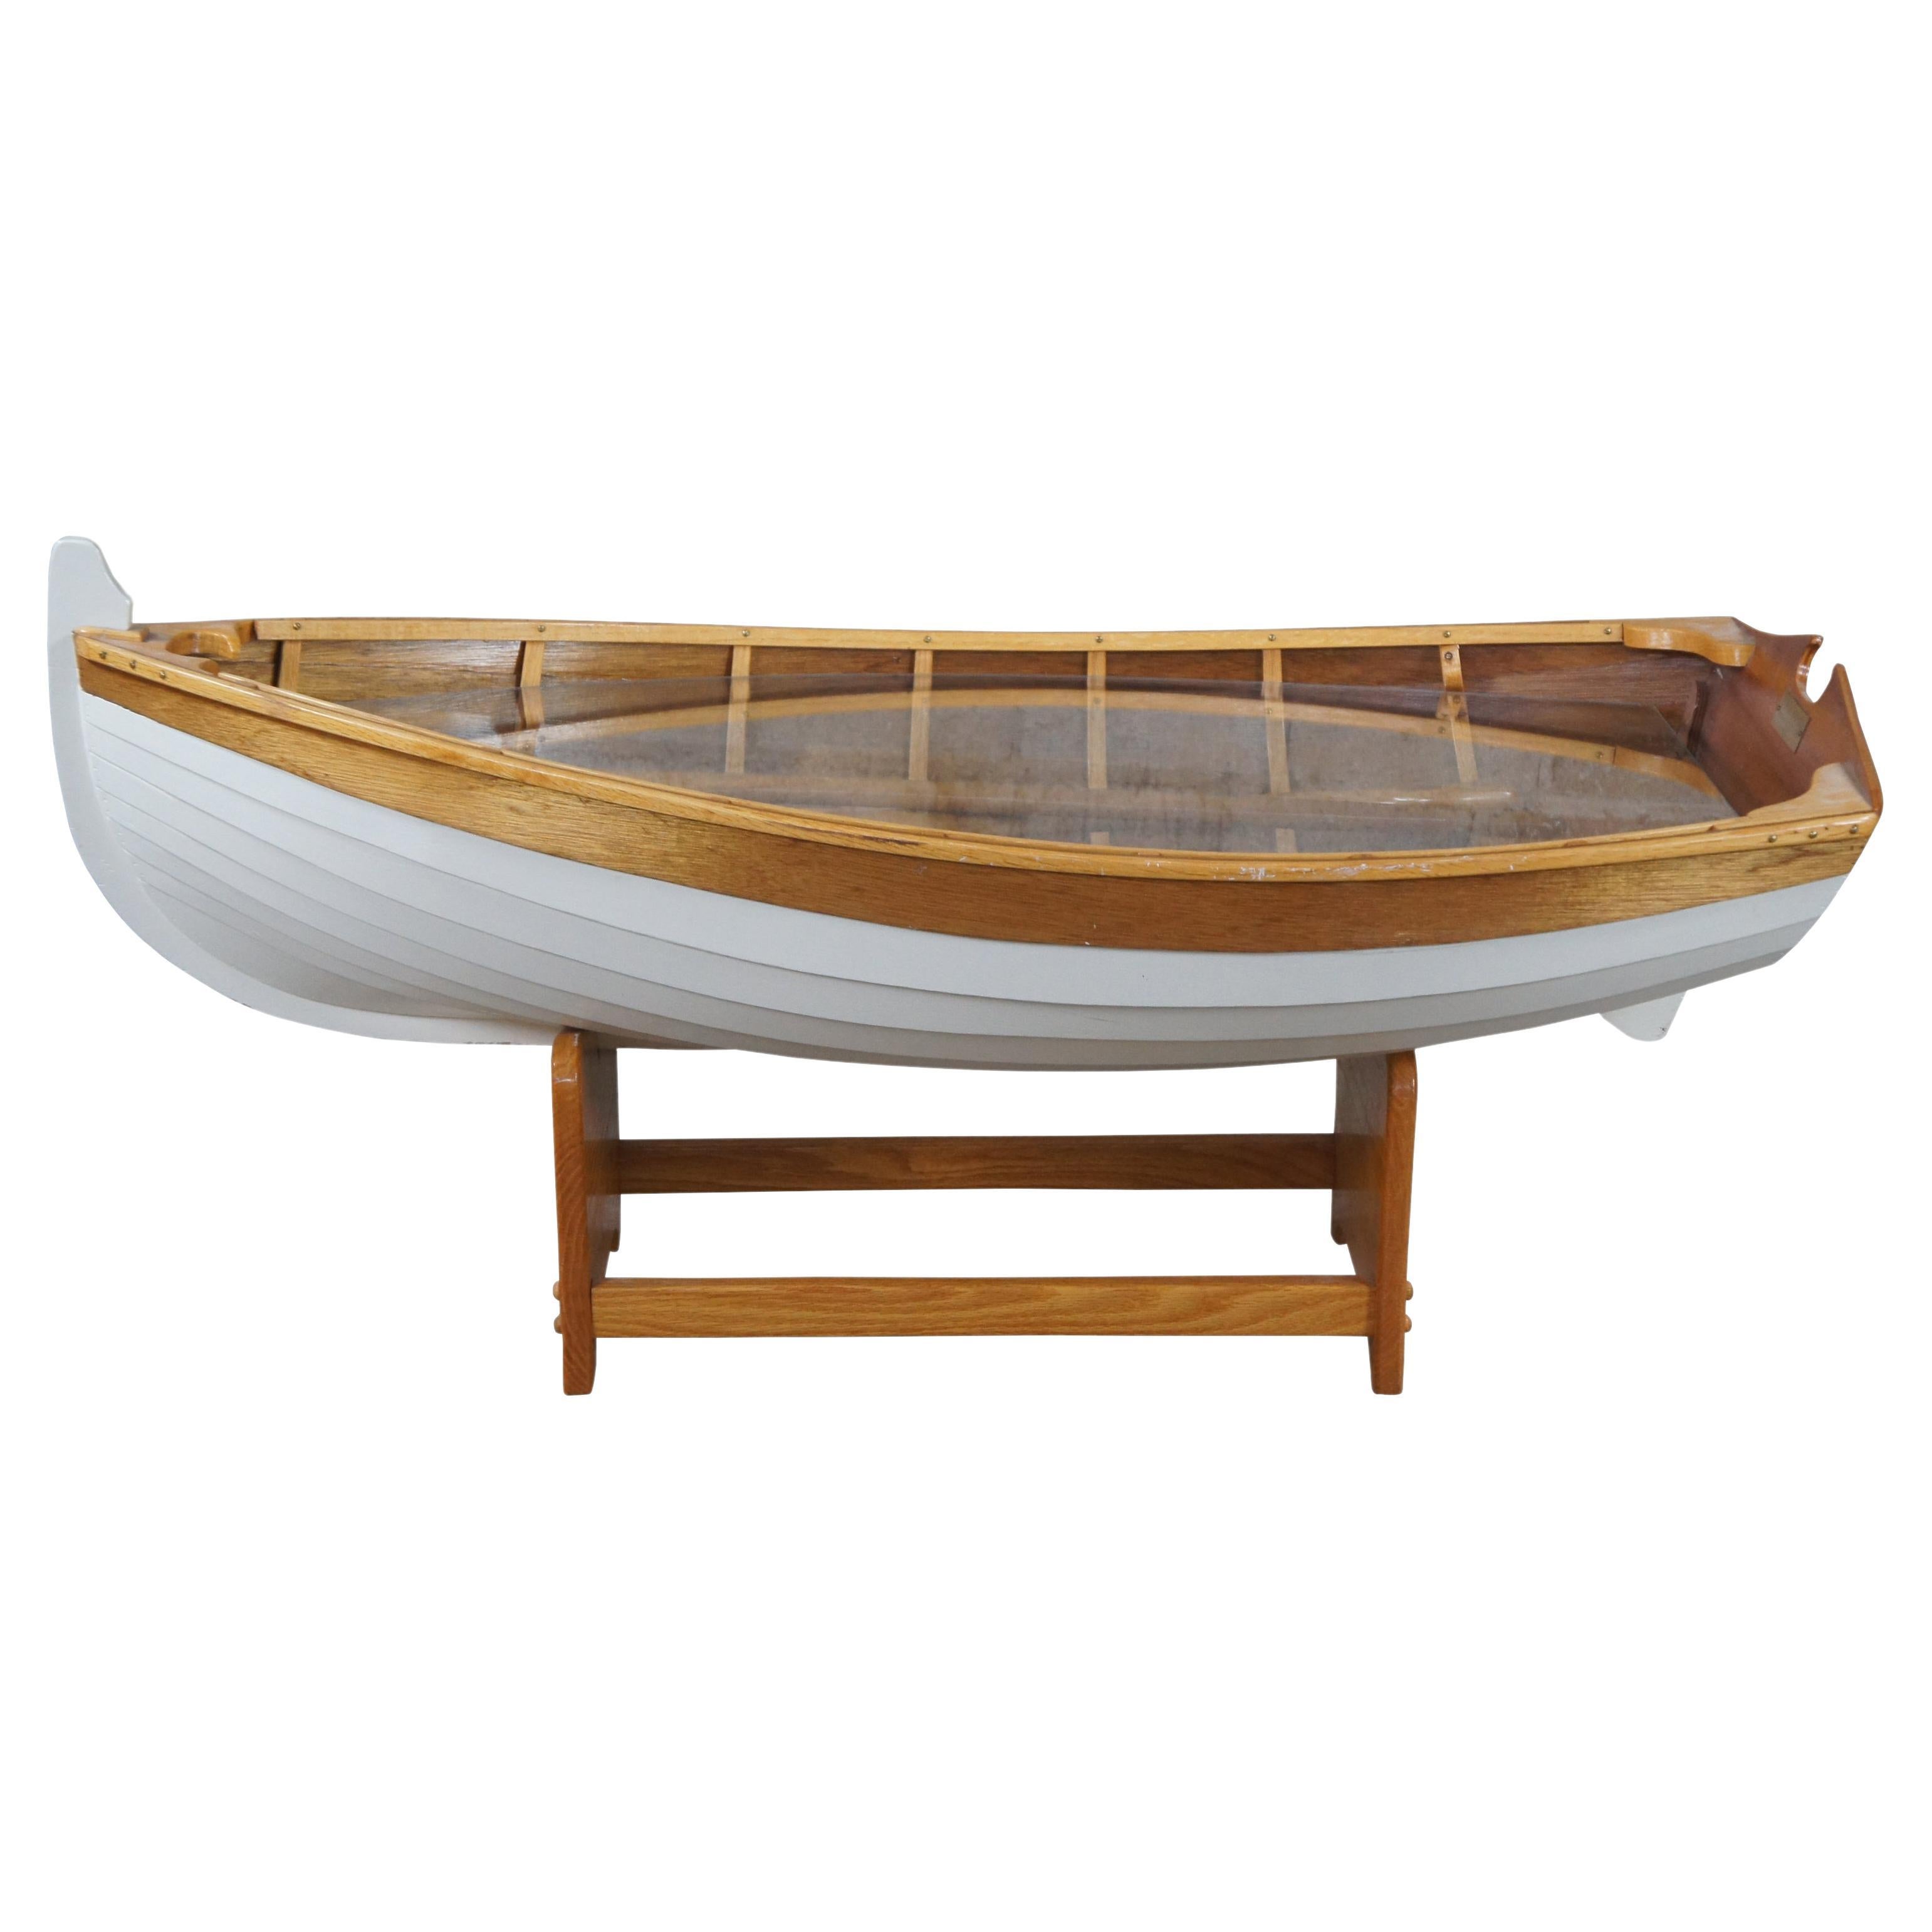 Table basse de bateau à rames vintage en chêne fait à la main par Handcraft Wood-Stuff 46" en vente